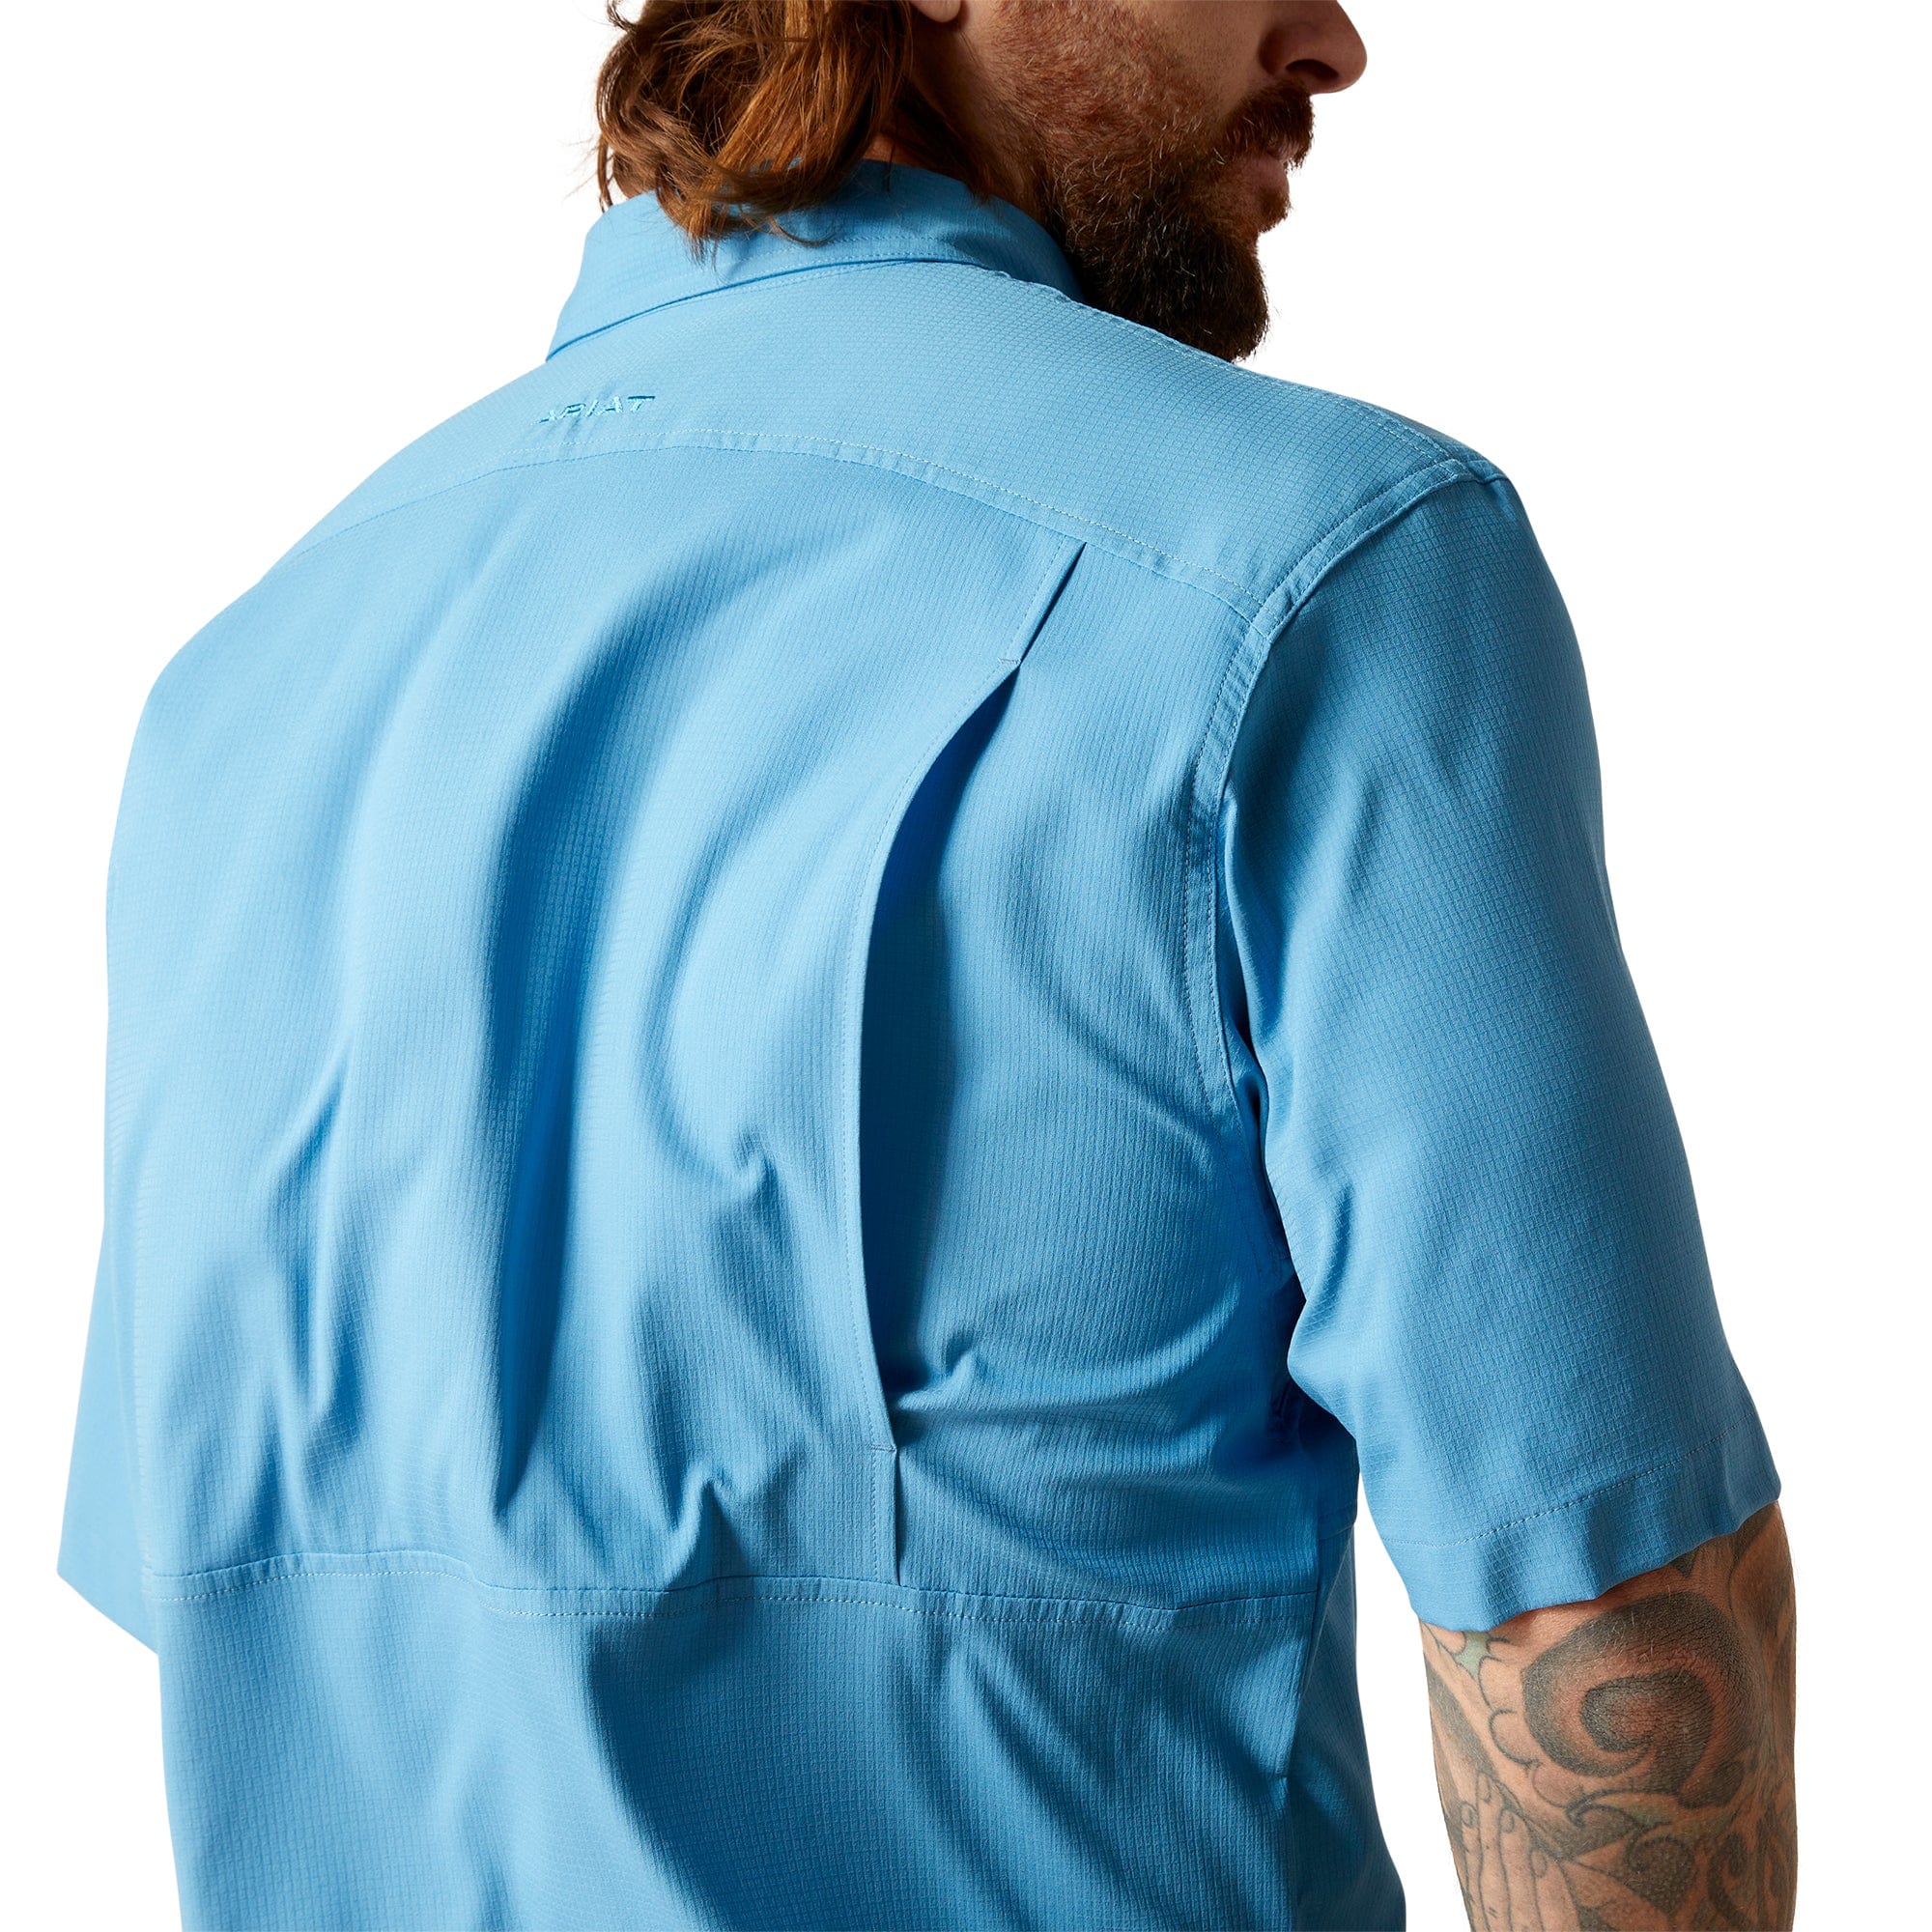 Ariat Men's VentTEK Blue Classic Fit Short Sleeve Shirt 10044933 -  Russell's Western Wear, Inc.